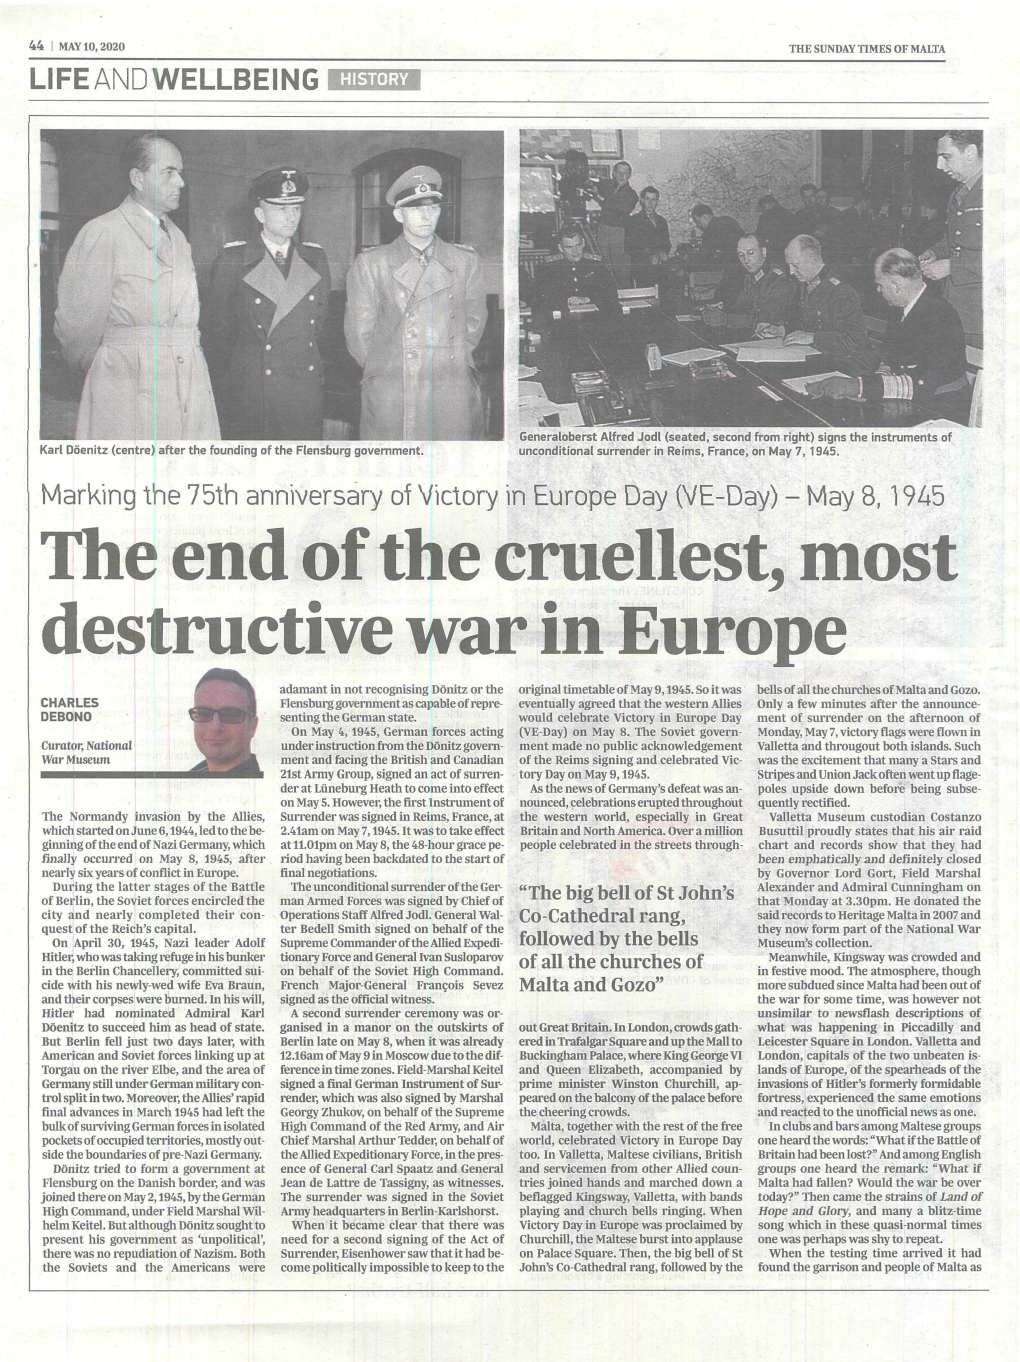 Destructive War in Europe